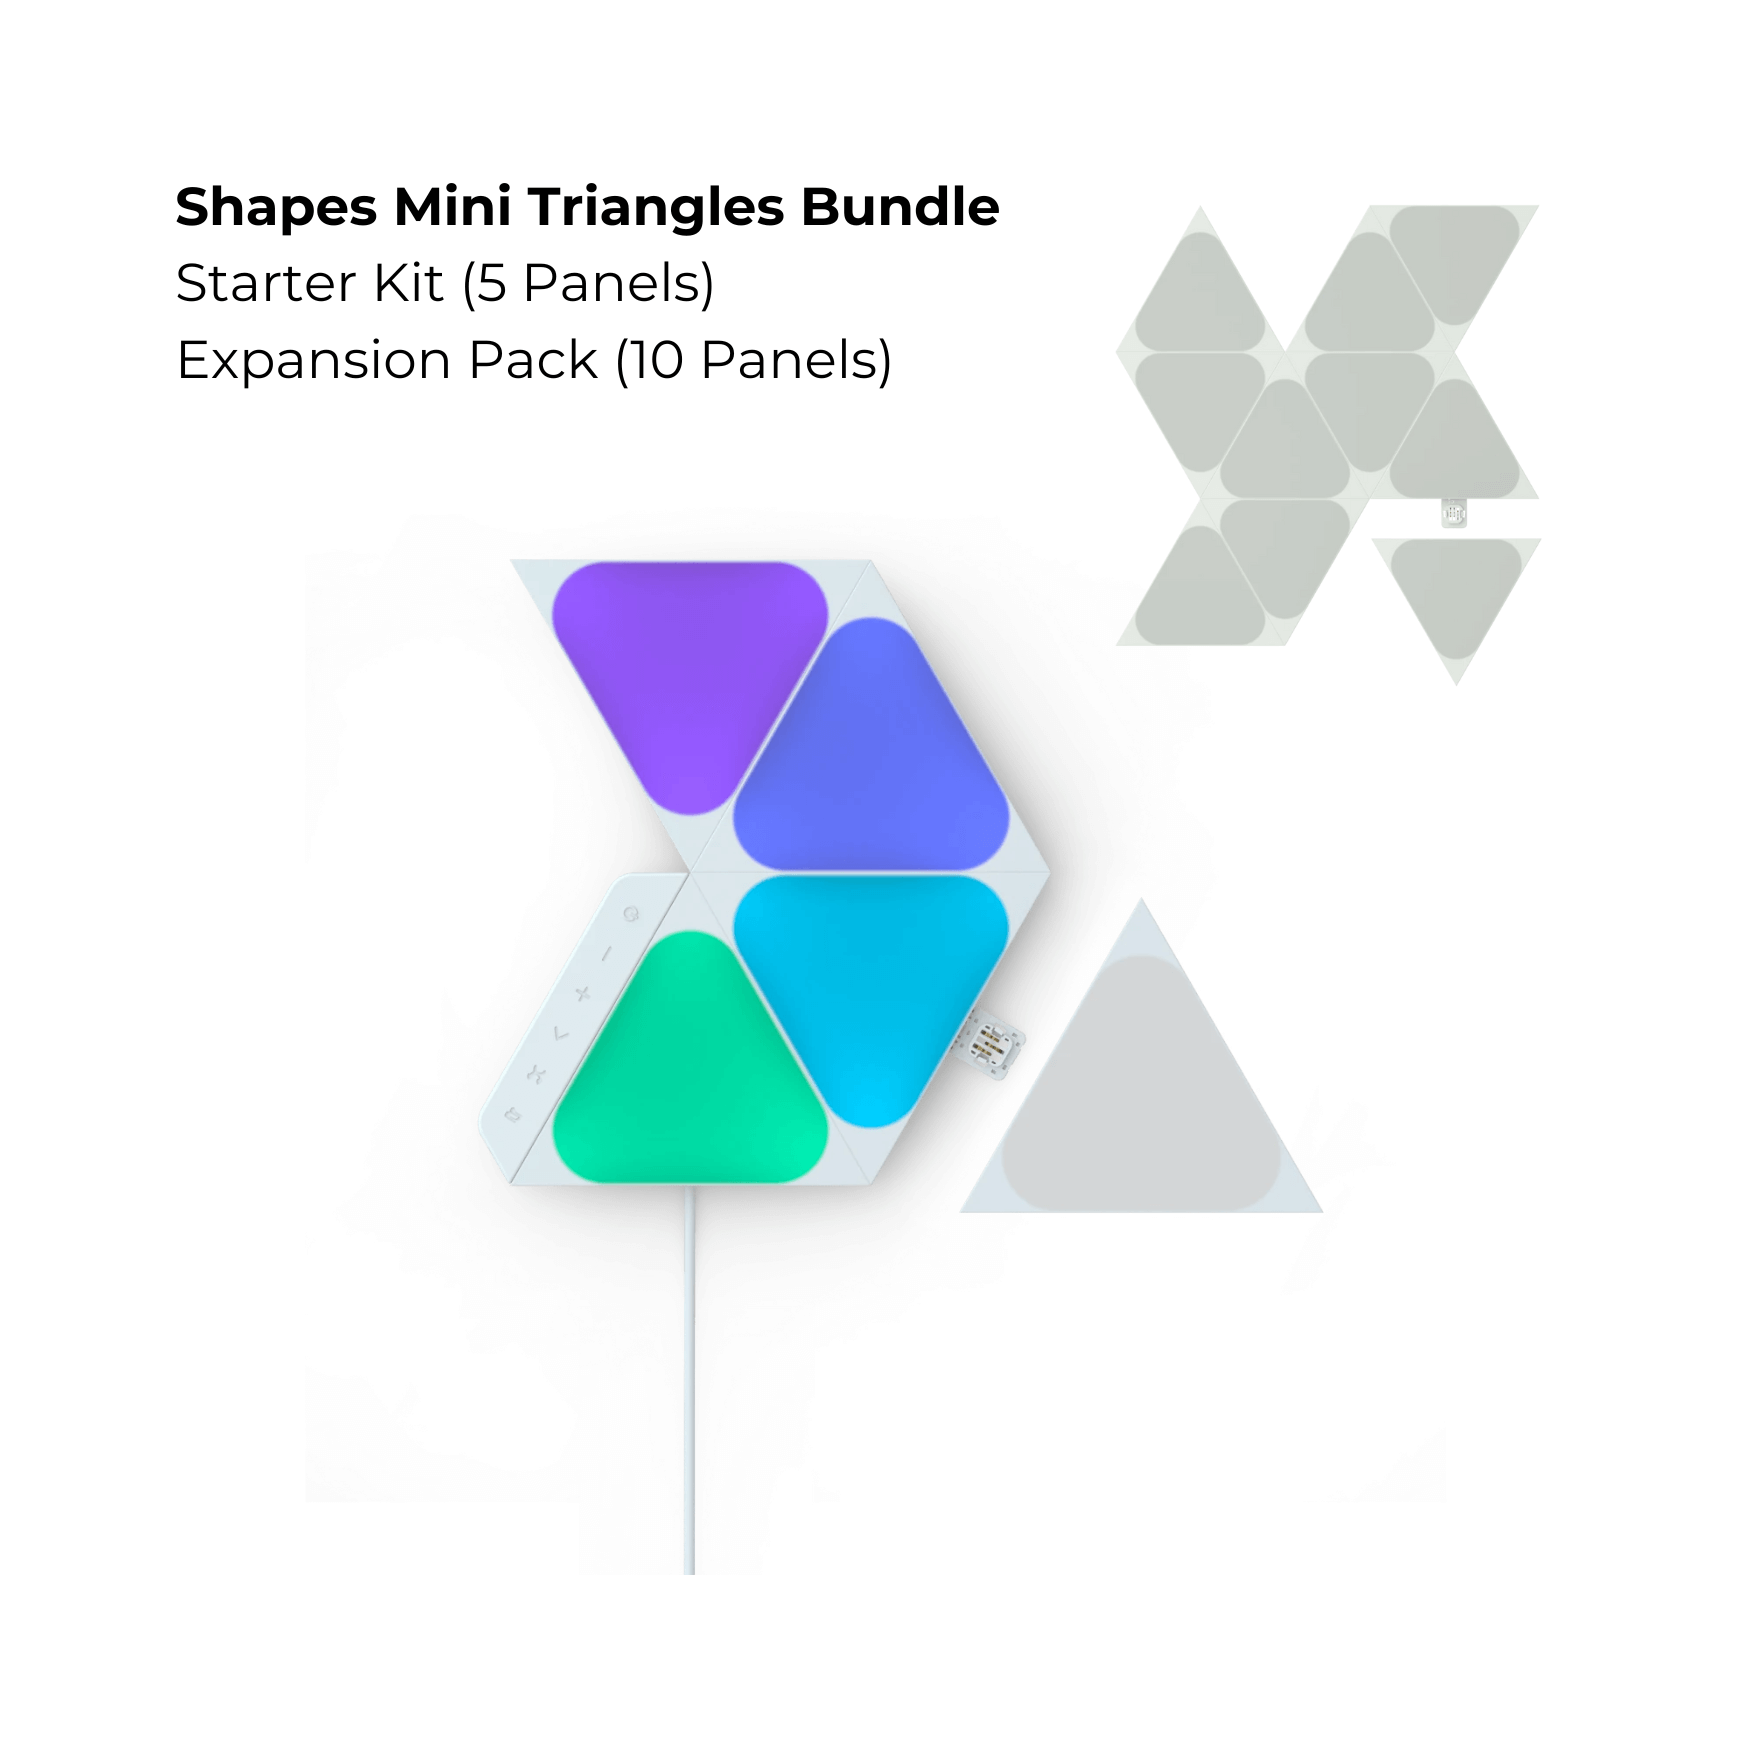 (Dec Brand Of The Day) Nanoleaf Shapes Mini Triangles Bundle Starter Kit (5 Panels) + Expansion Pack (10 Panels)